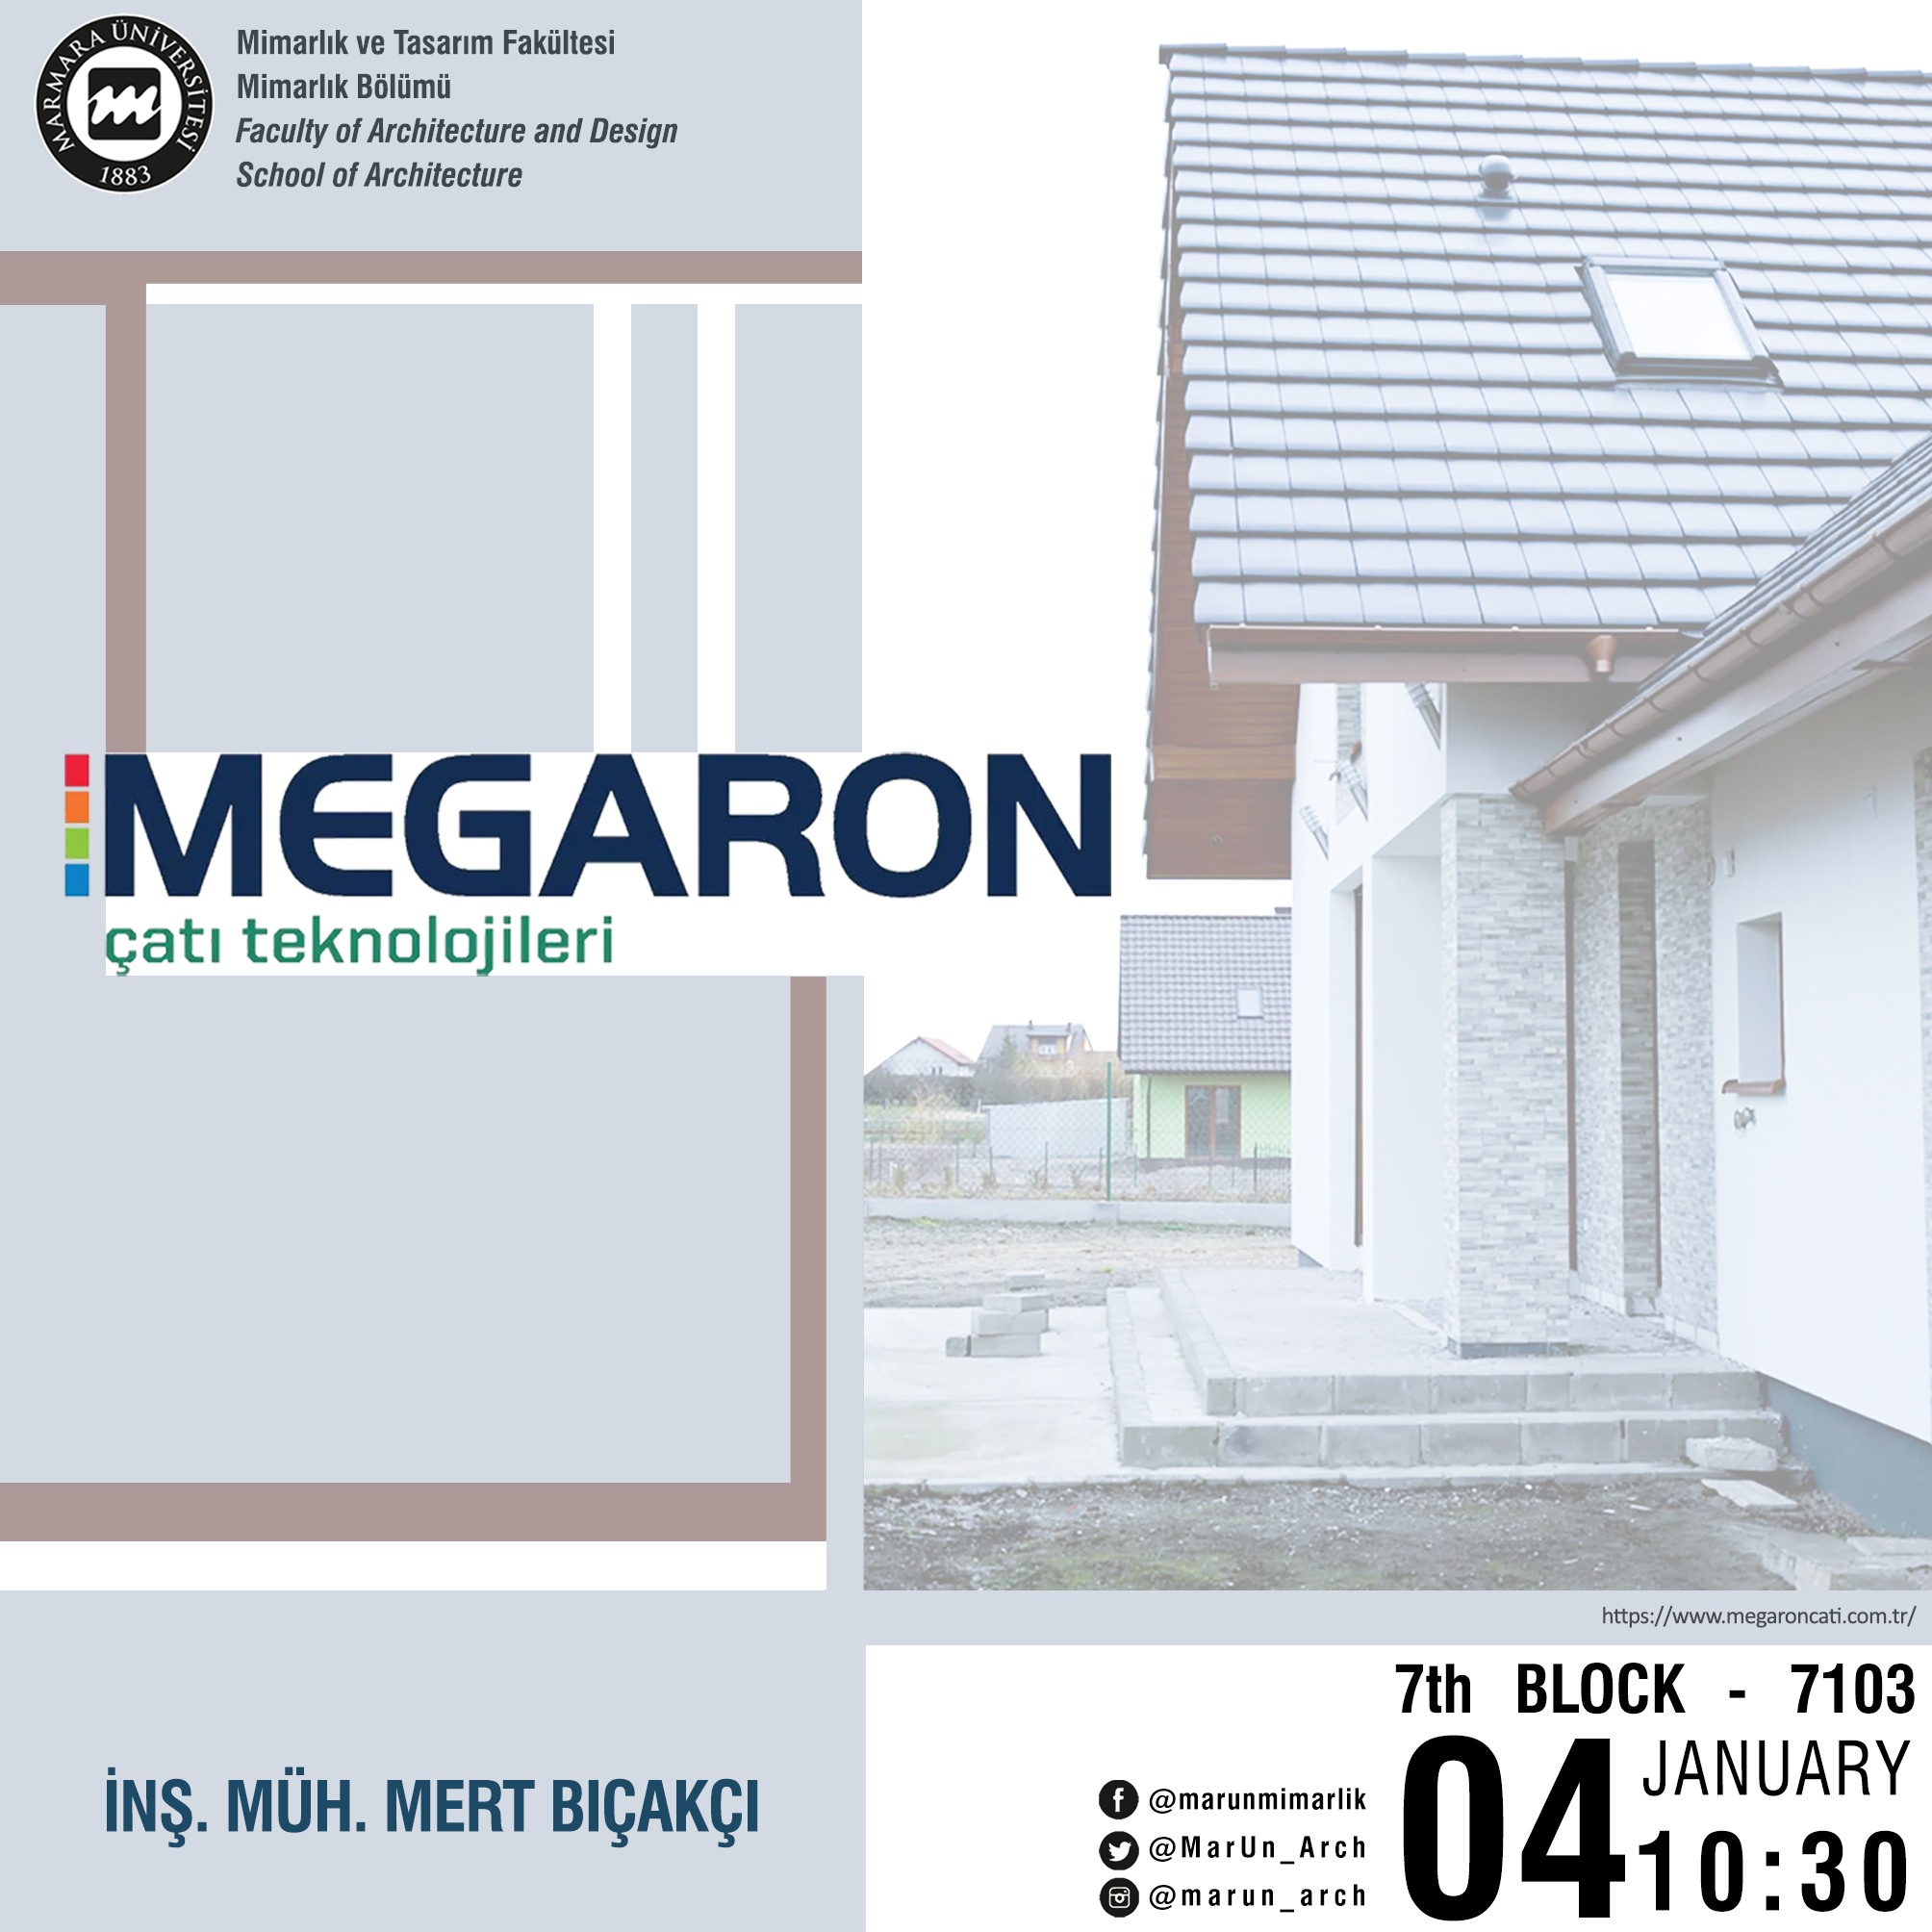 Megaron_afiş deneme 1.jpg (927 KB)